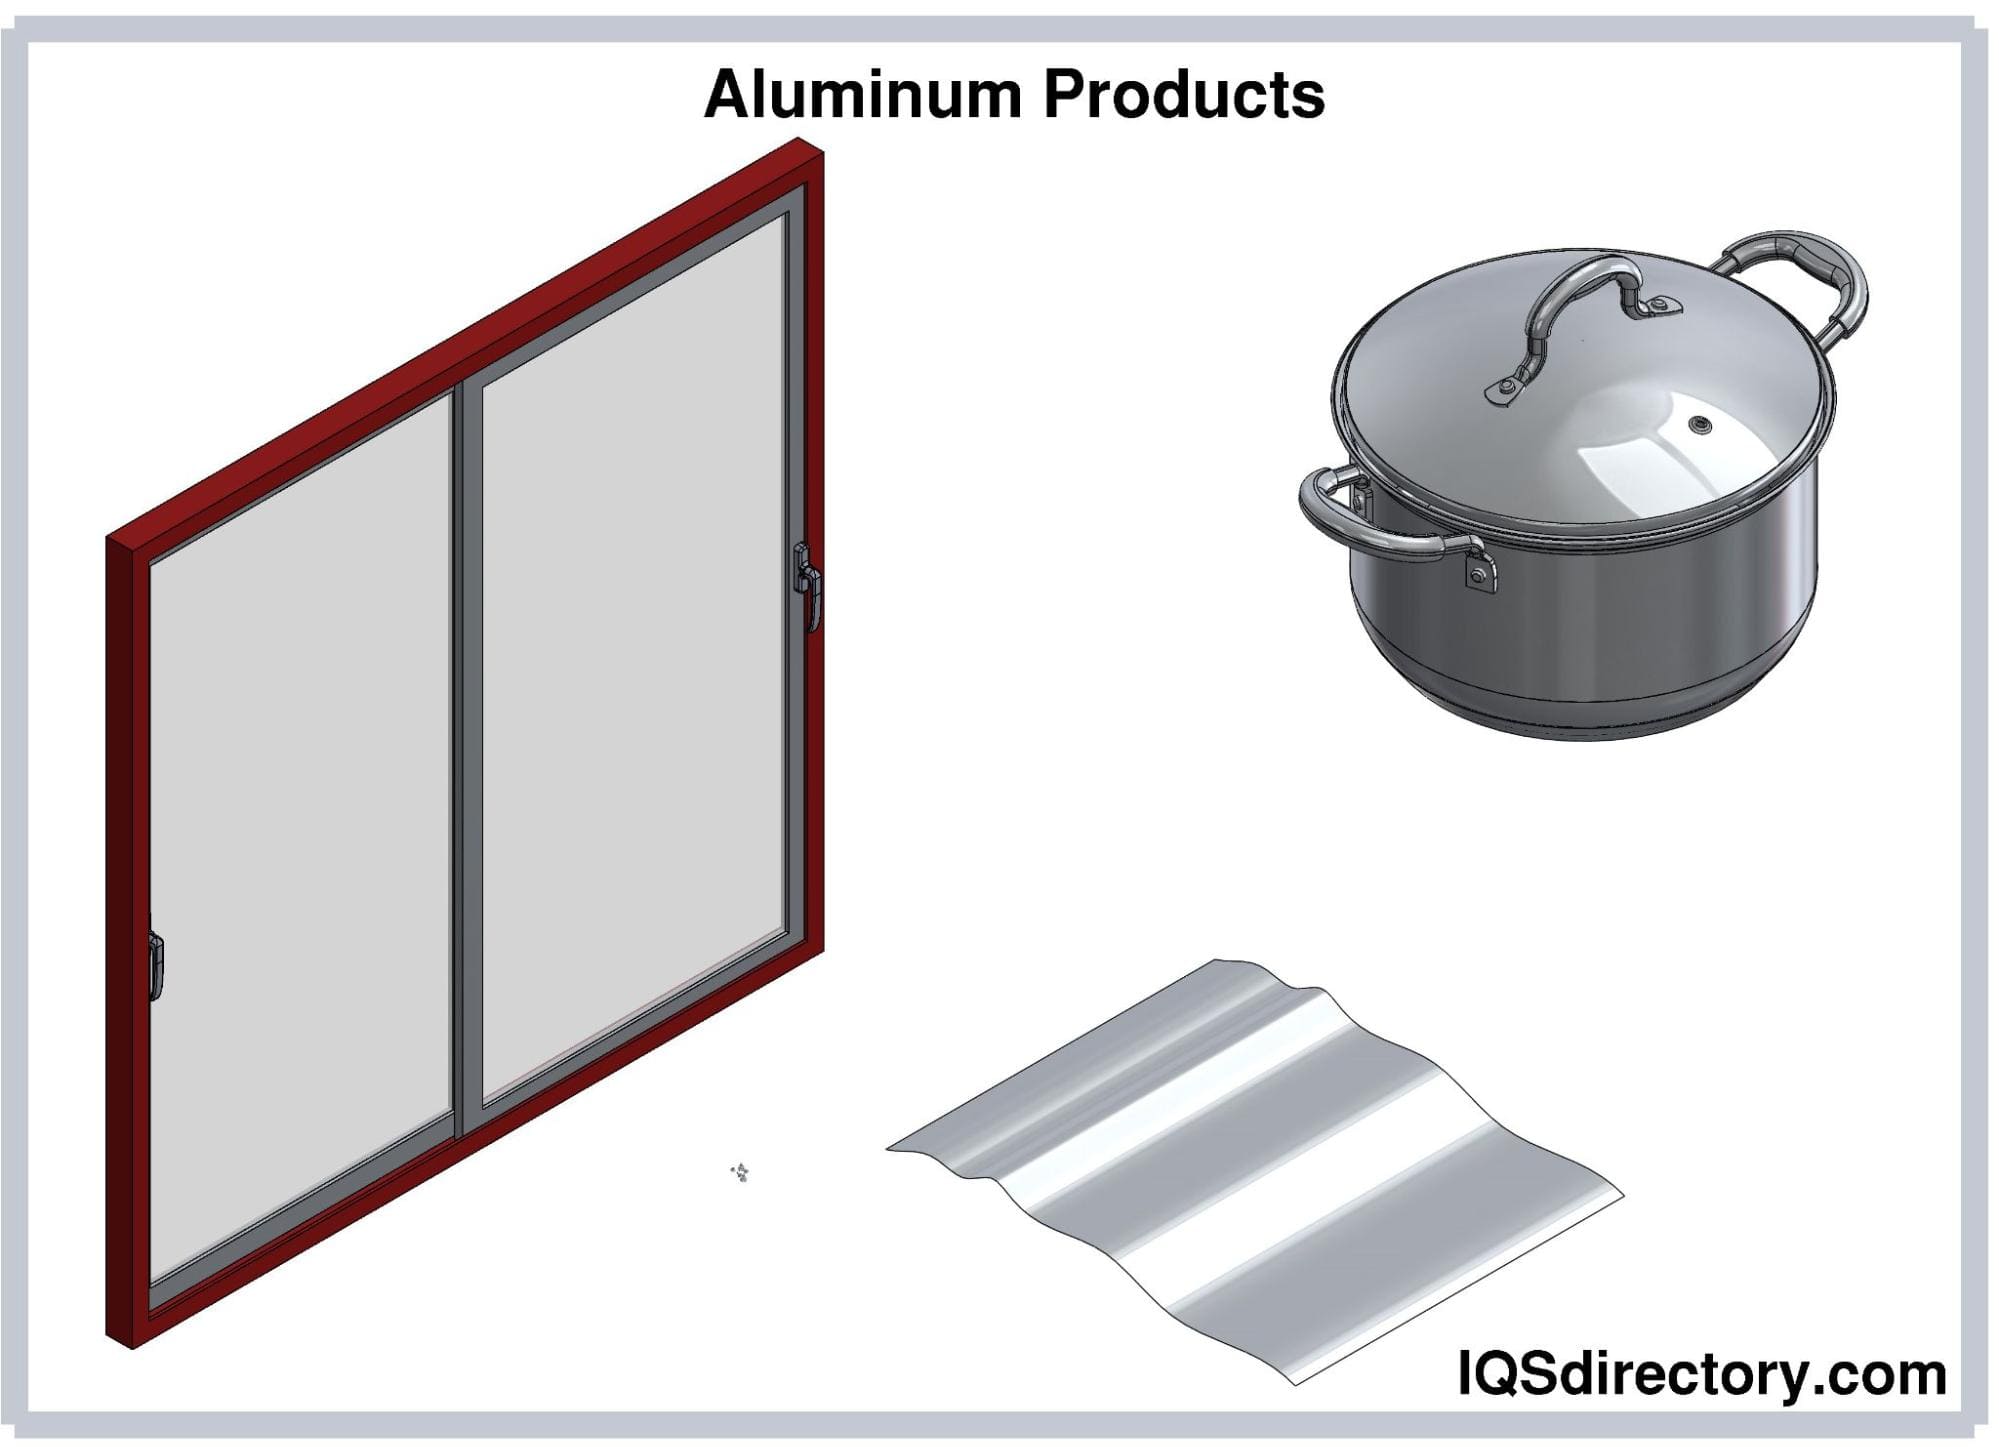 Types of Aluminum